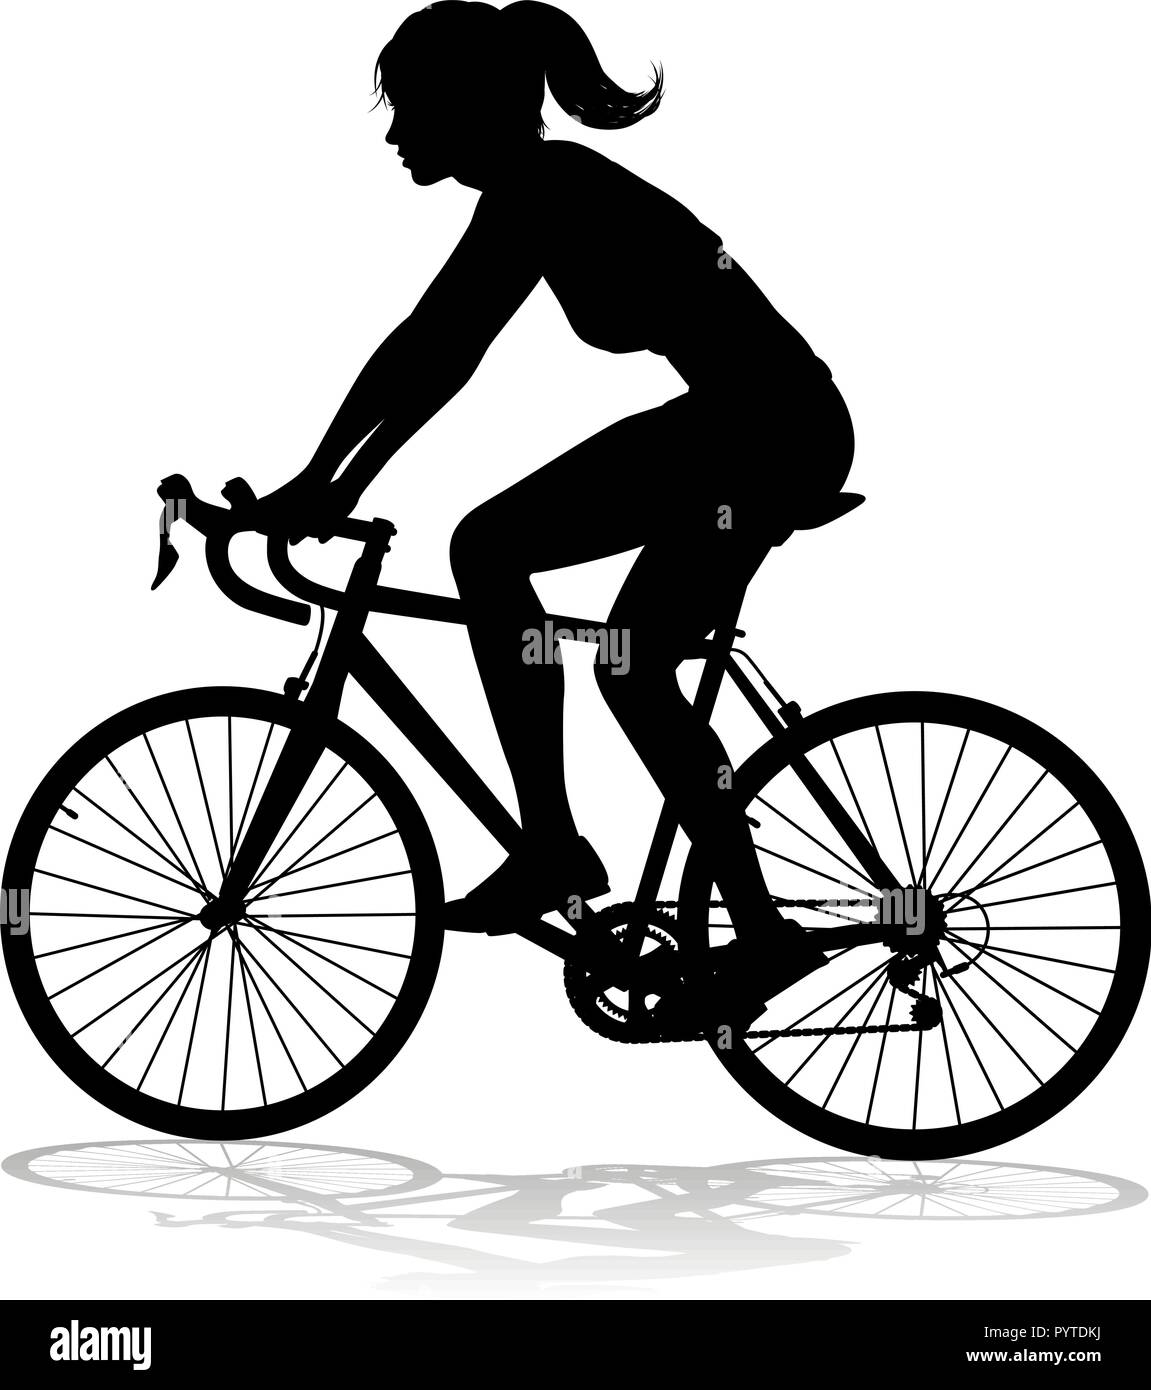 Pignon Vélo Noir Et Blanc Clip Art Libres De Droits, Svg, Vecteurs Et  Illustration. Image 176137279